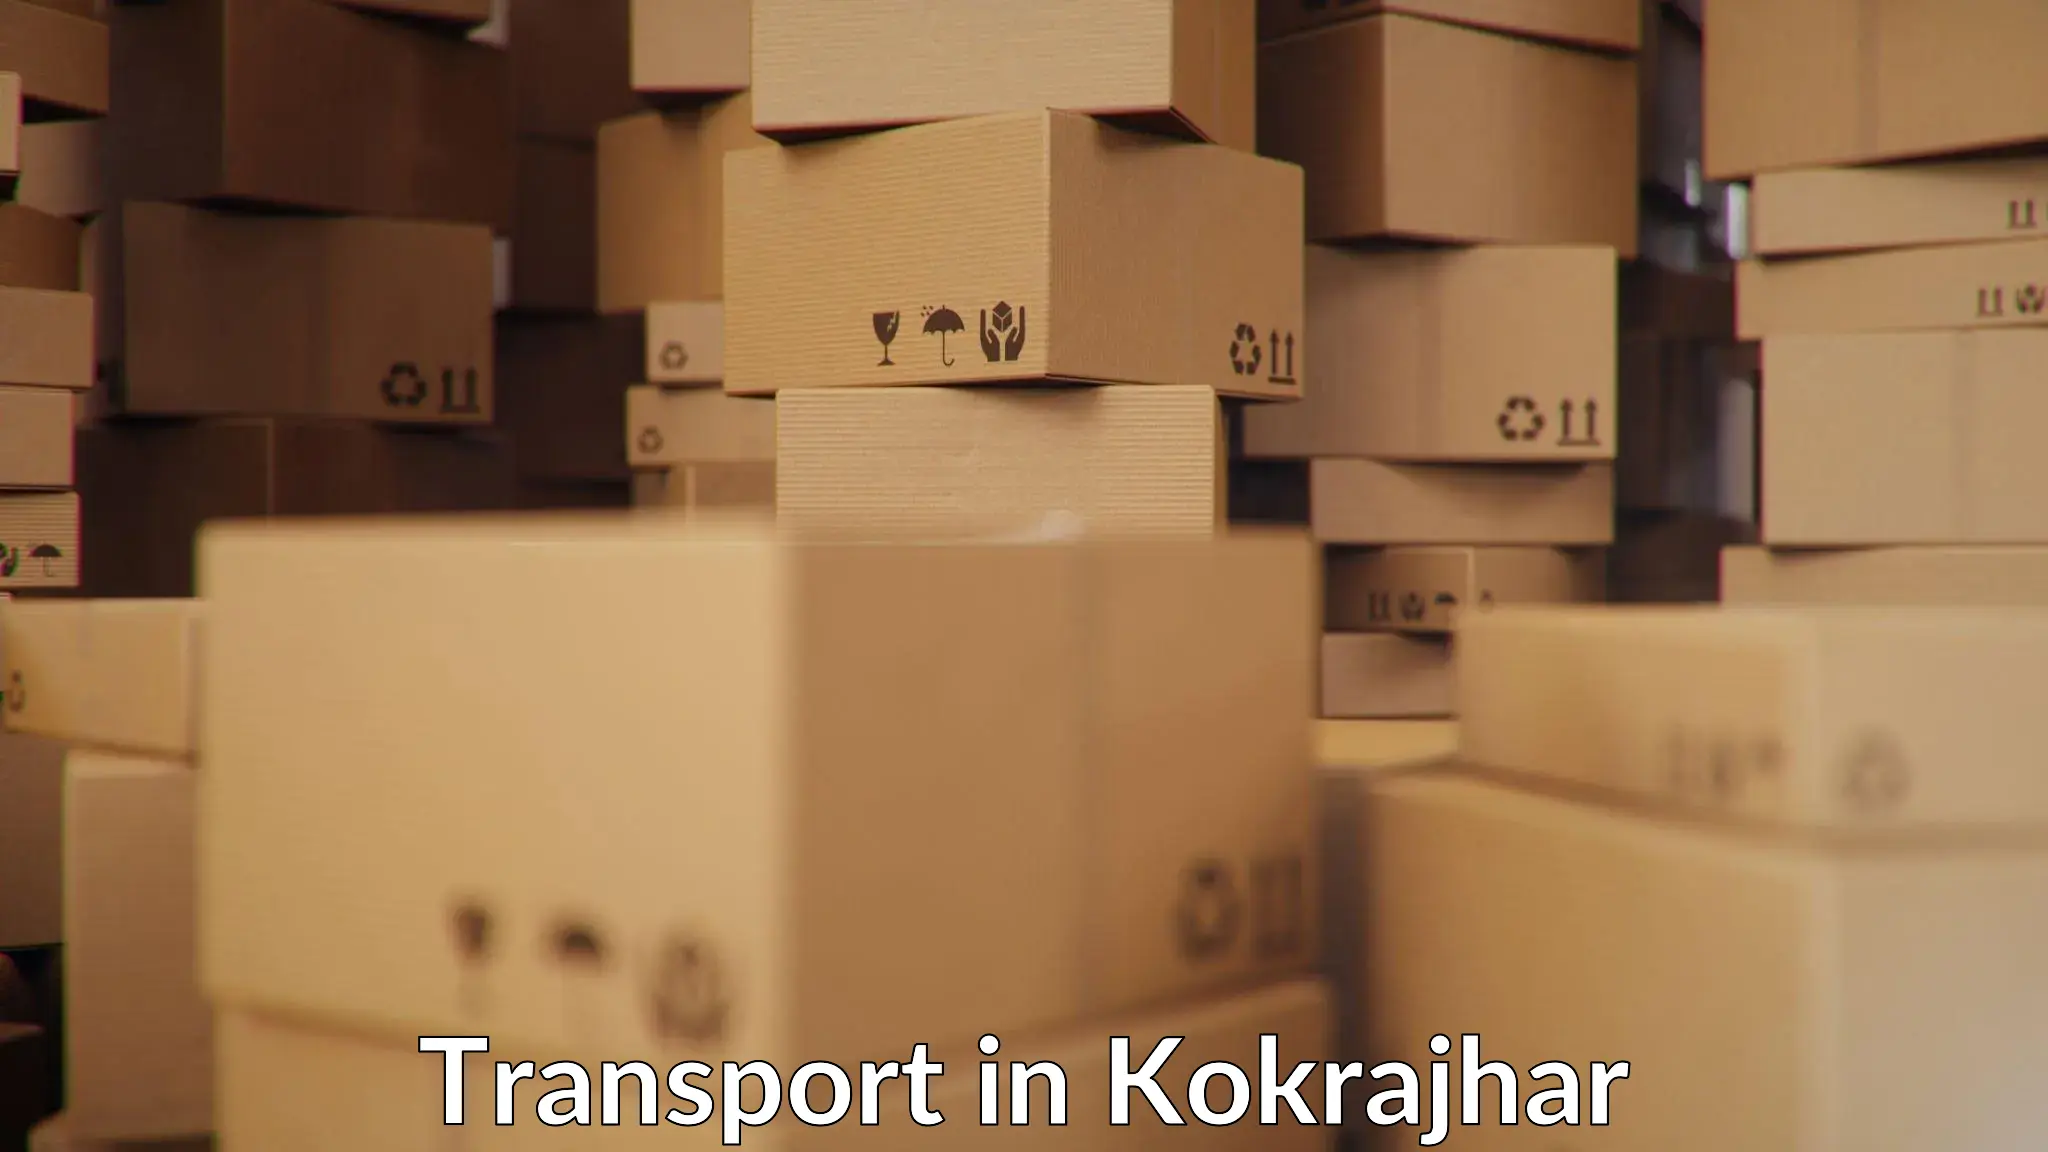 Domestic goods transportation services in Kokrajhar